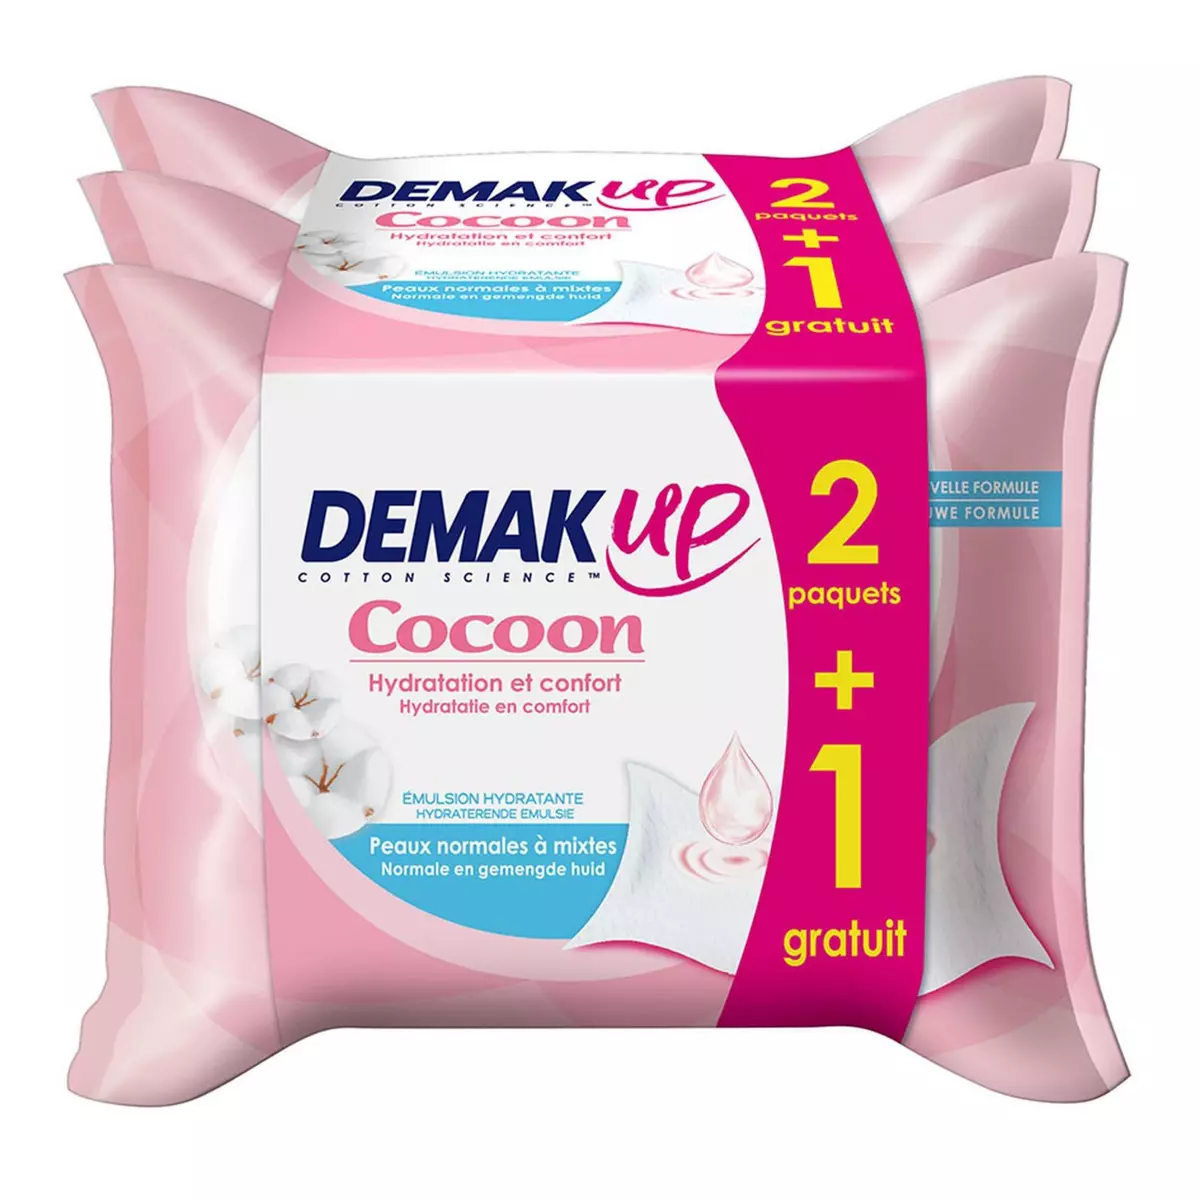 DEMAK'UP Cocoon Lingettes hydratation et confort peaux normales à mixtes 2+1 offert 3x25 lingettes